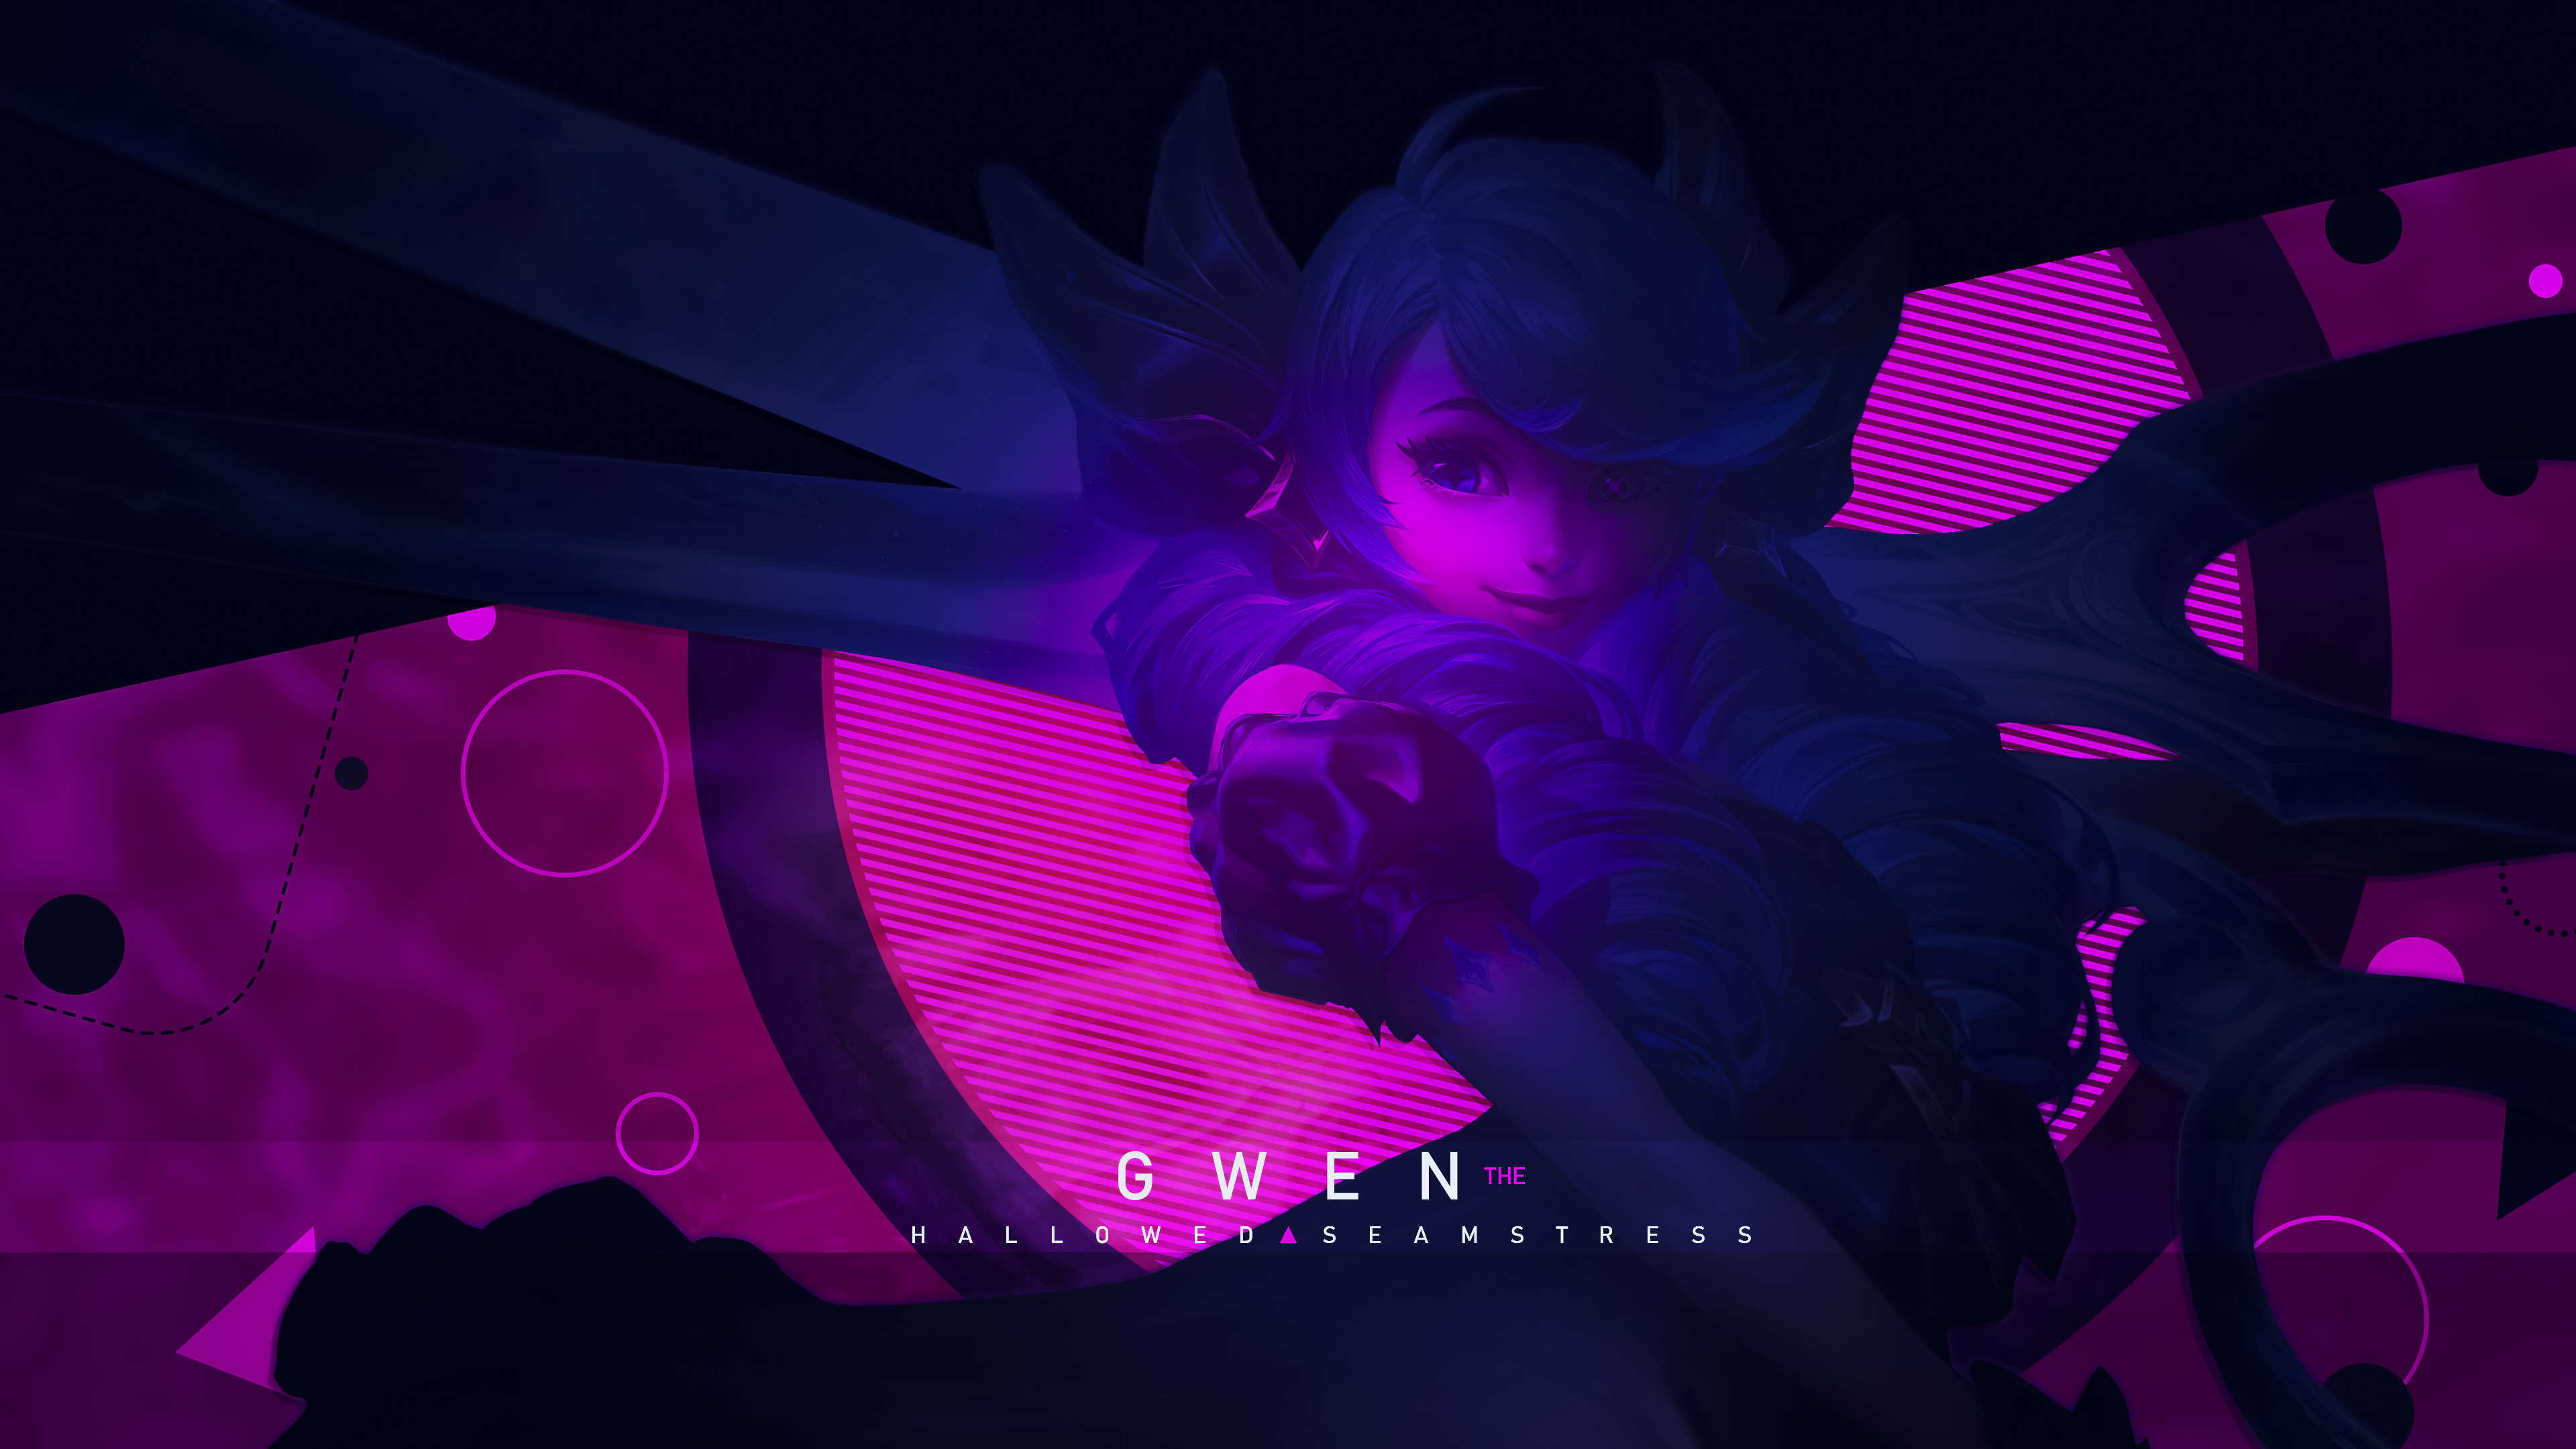 Gwen League of Legends Art Wallpaper 4k HD ID:10809